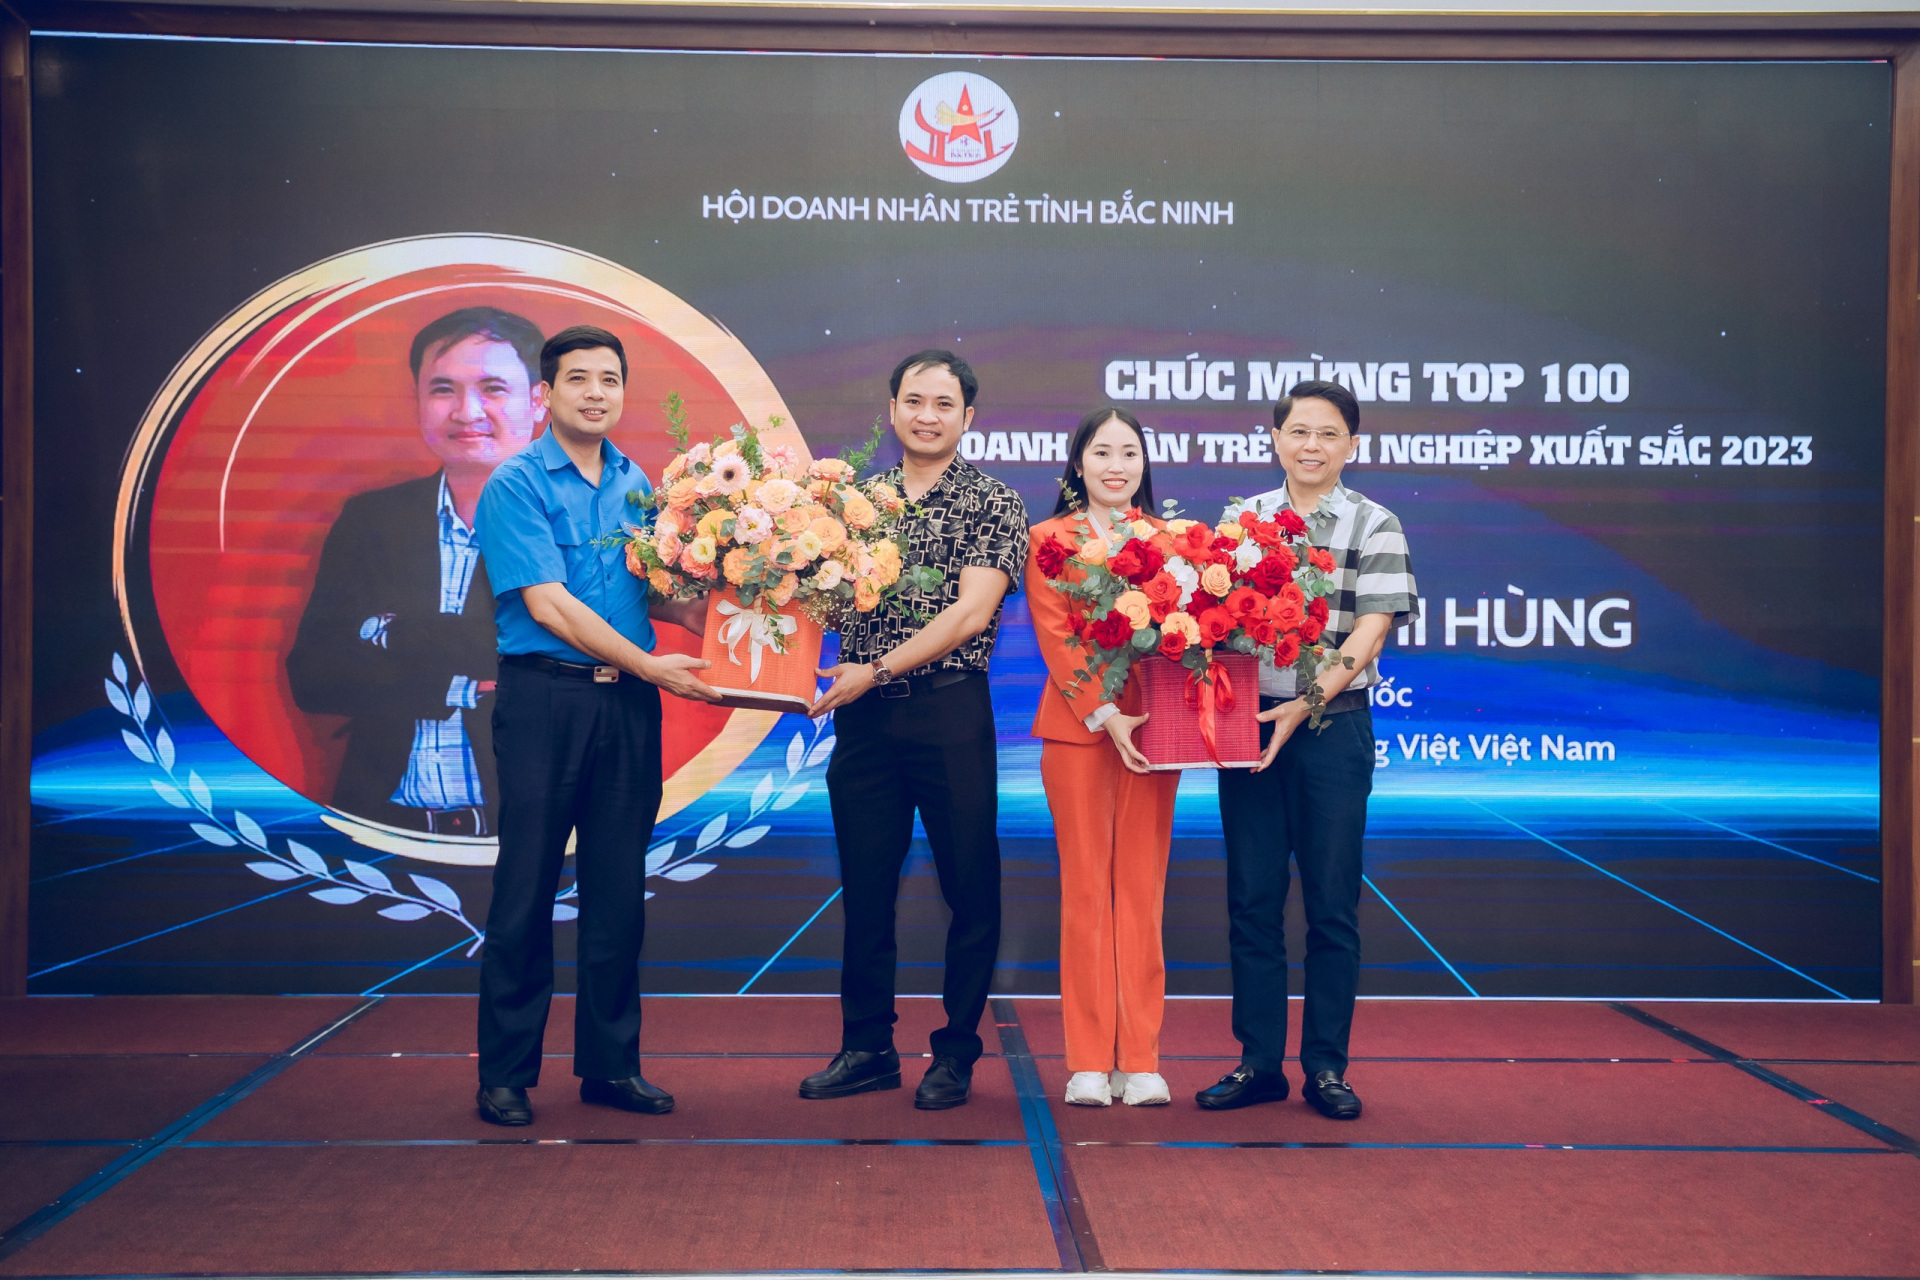 Chị Nguyễn Thị Hạnh - Tổng giám đốc Công ty cổ phần ZORO AYA nhận hoa chúc mừng giải thưởng "Top 10 Doanh nhân trẻ khởi nghiệp xuất sắc 2023"